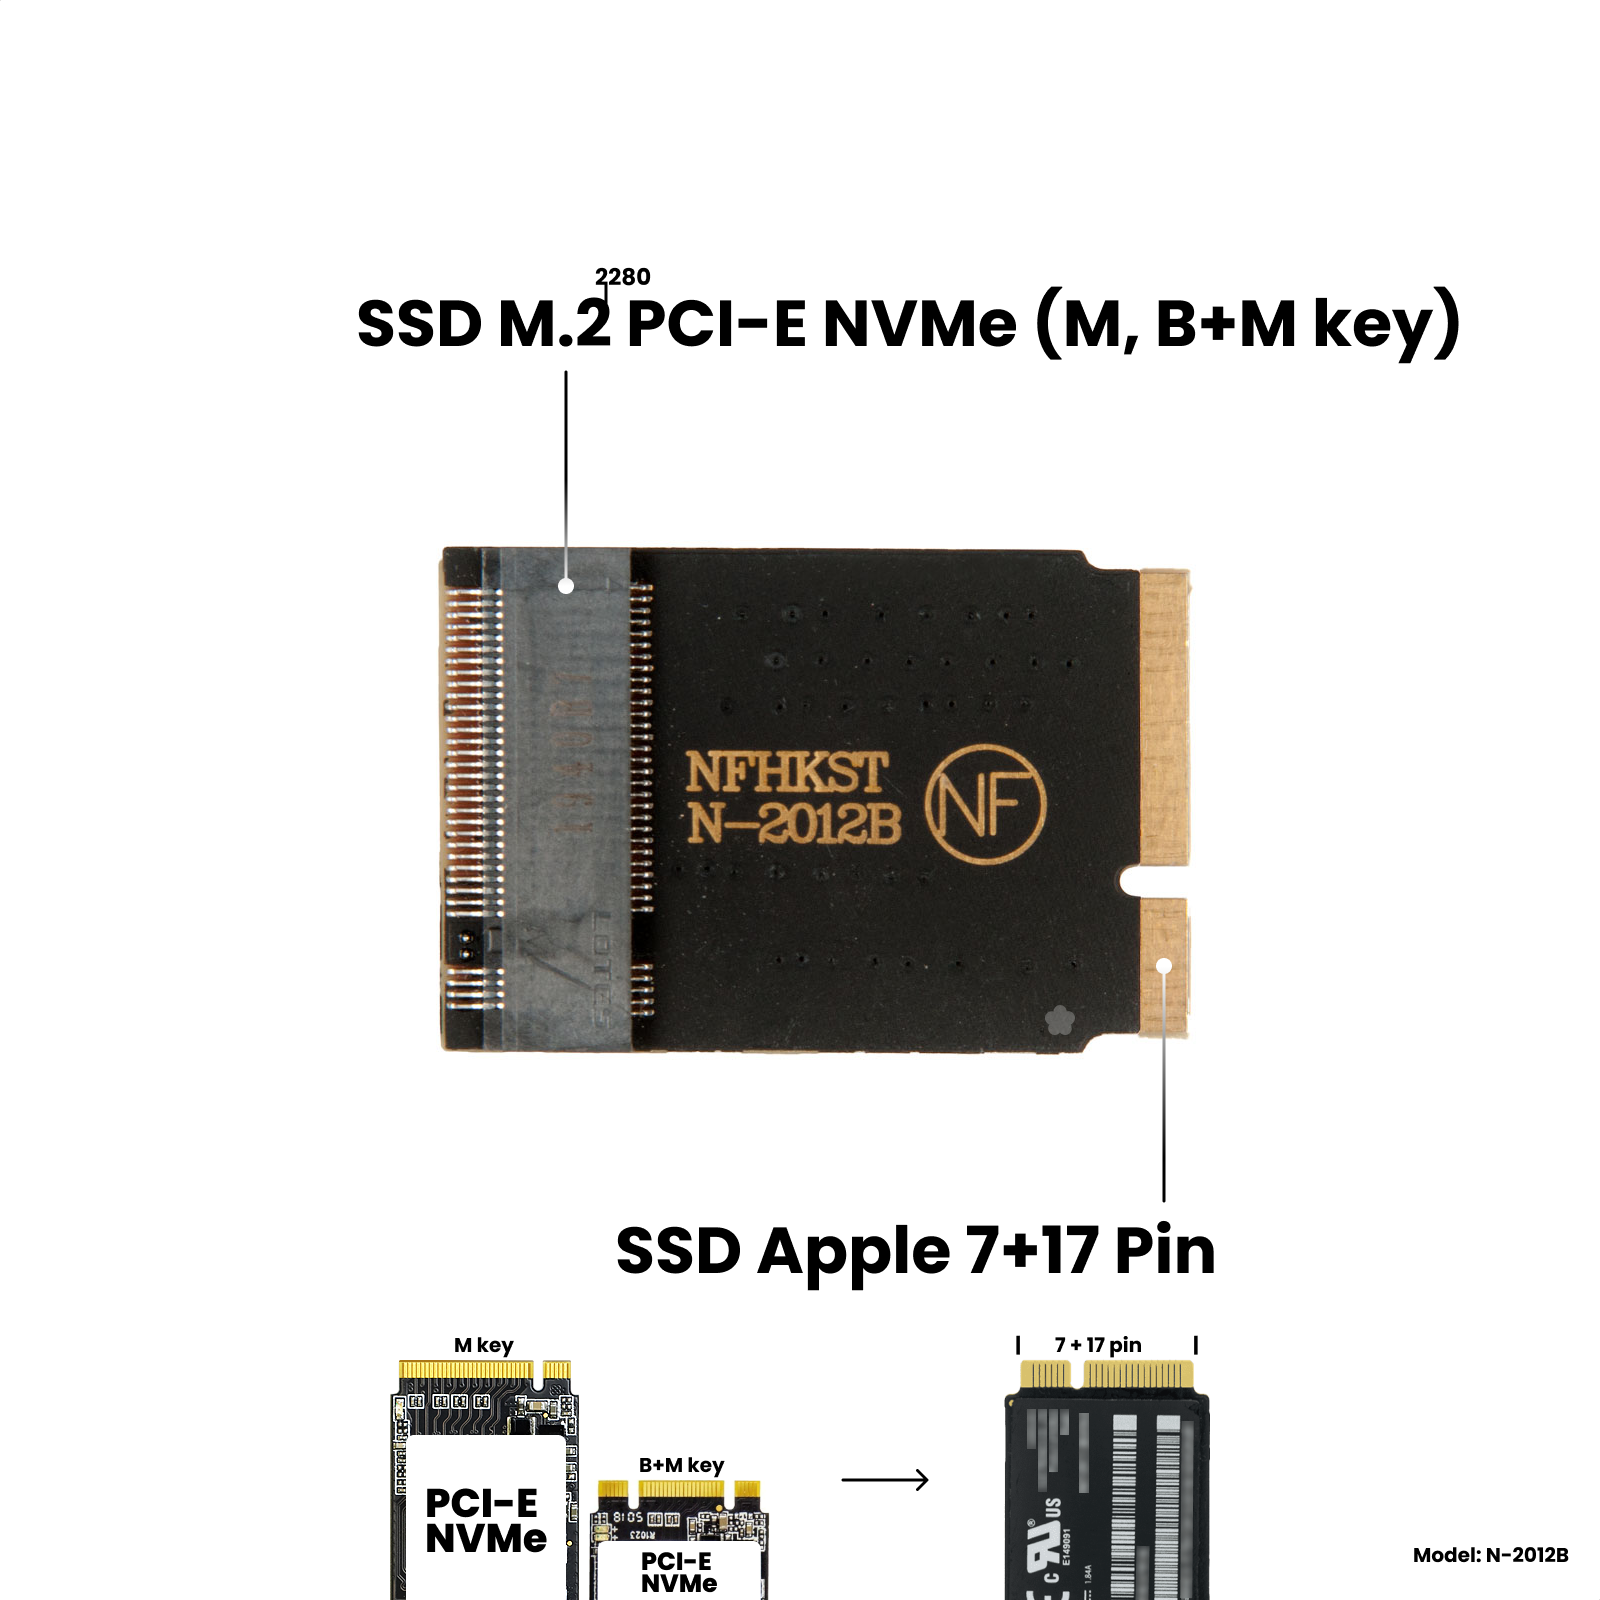 Адаптер-переходник для установки диска SSD M.2 NVMe (M key) в разъем Apple SSD (7+17 Pin) на MacBook Air 11" 13" Mid 2012 / NFHK N-2012B